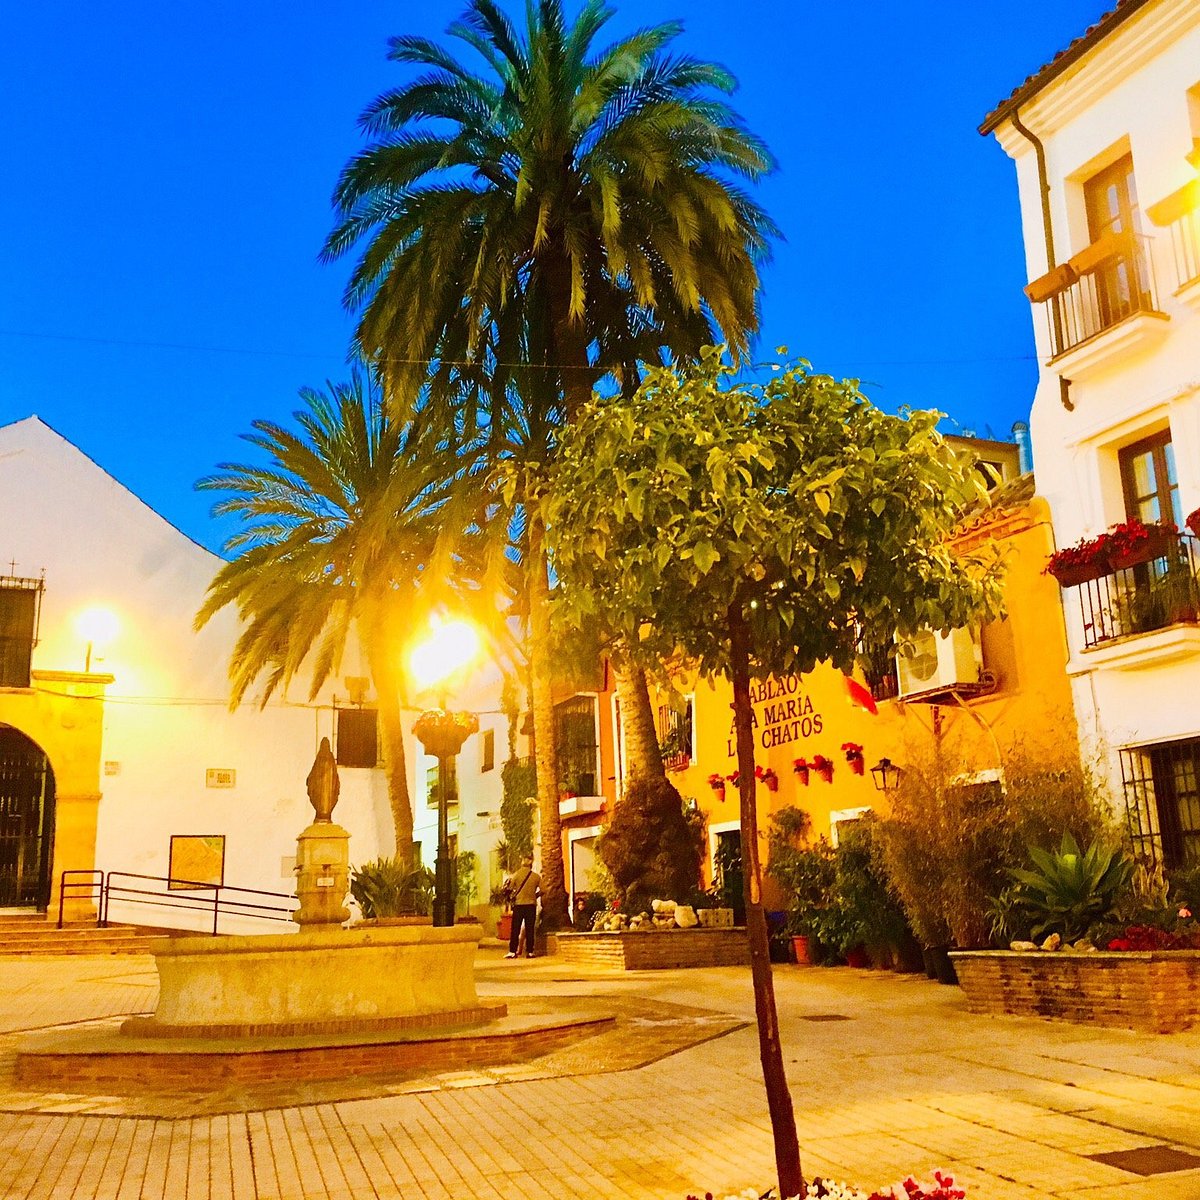 Puerto Banus Marbella Spain Luxury & Style Autumn October 2021